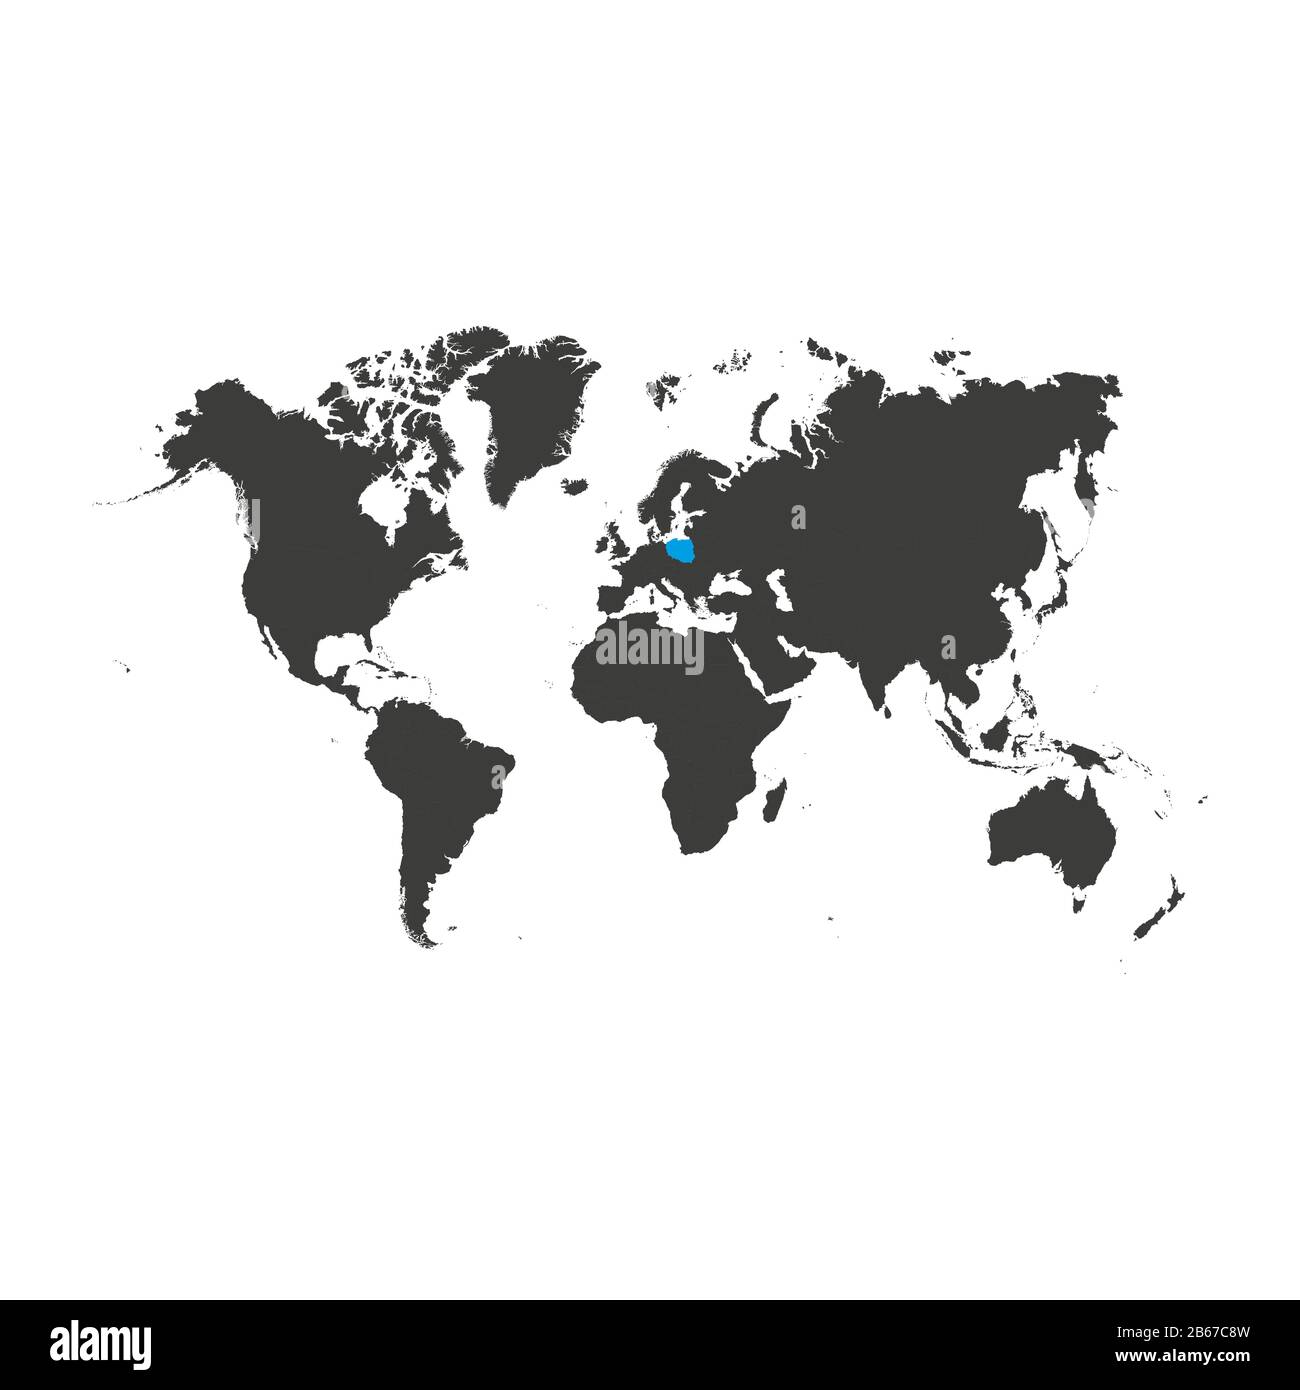 Paese europeo Polonia contrassegnati dal colore blu nella mappa del mondo illustrazione vettoriale. Illustrazione Vettoriale